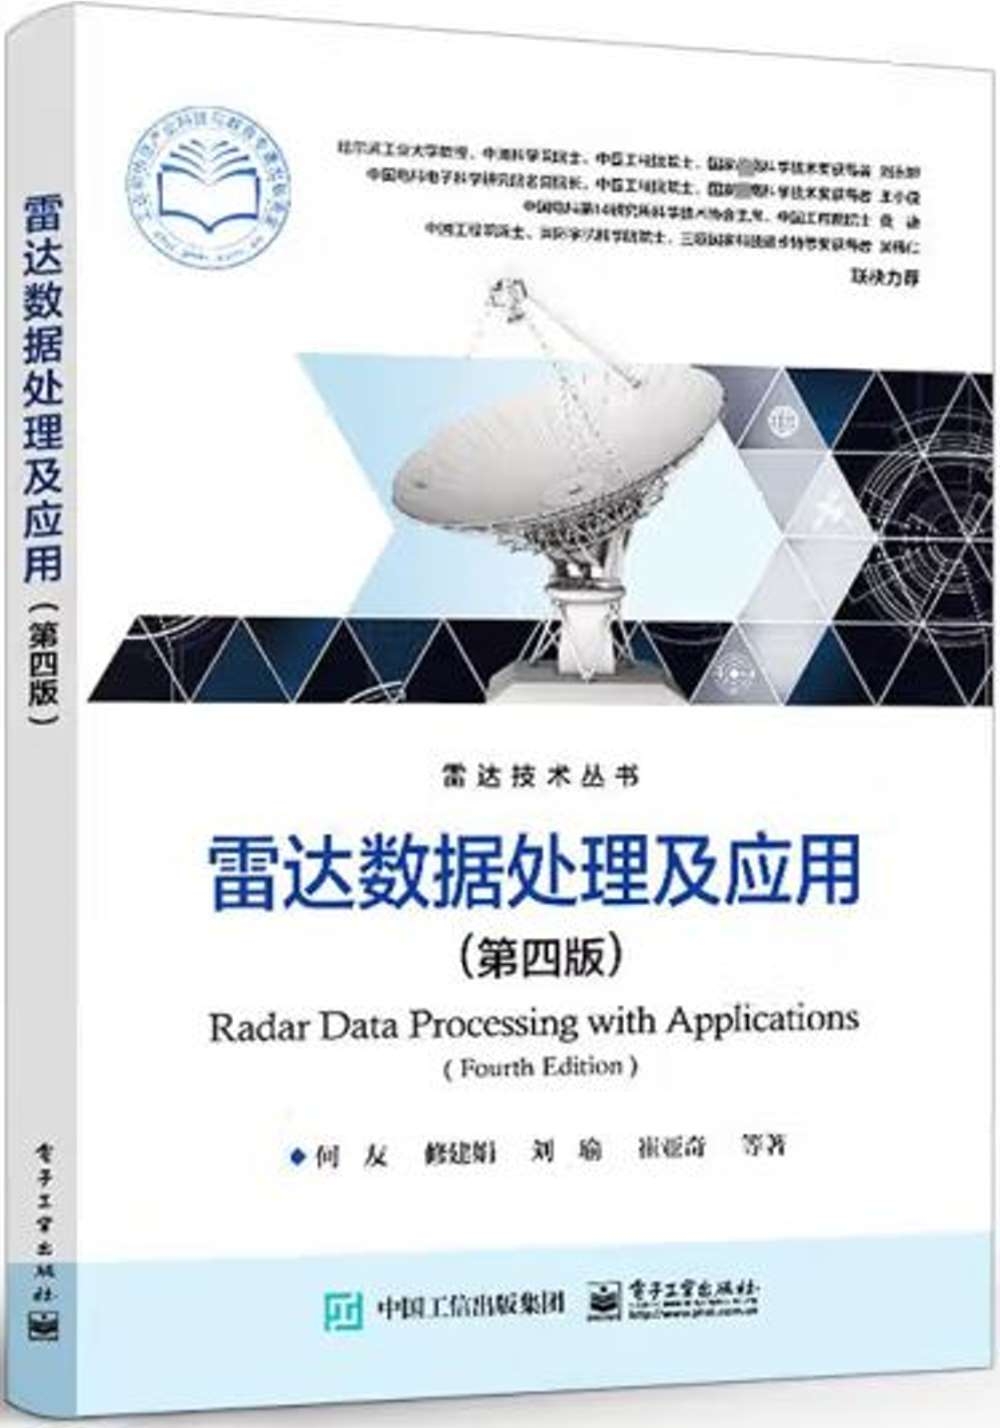 雷達數據處理及應用（第四版）